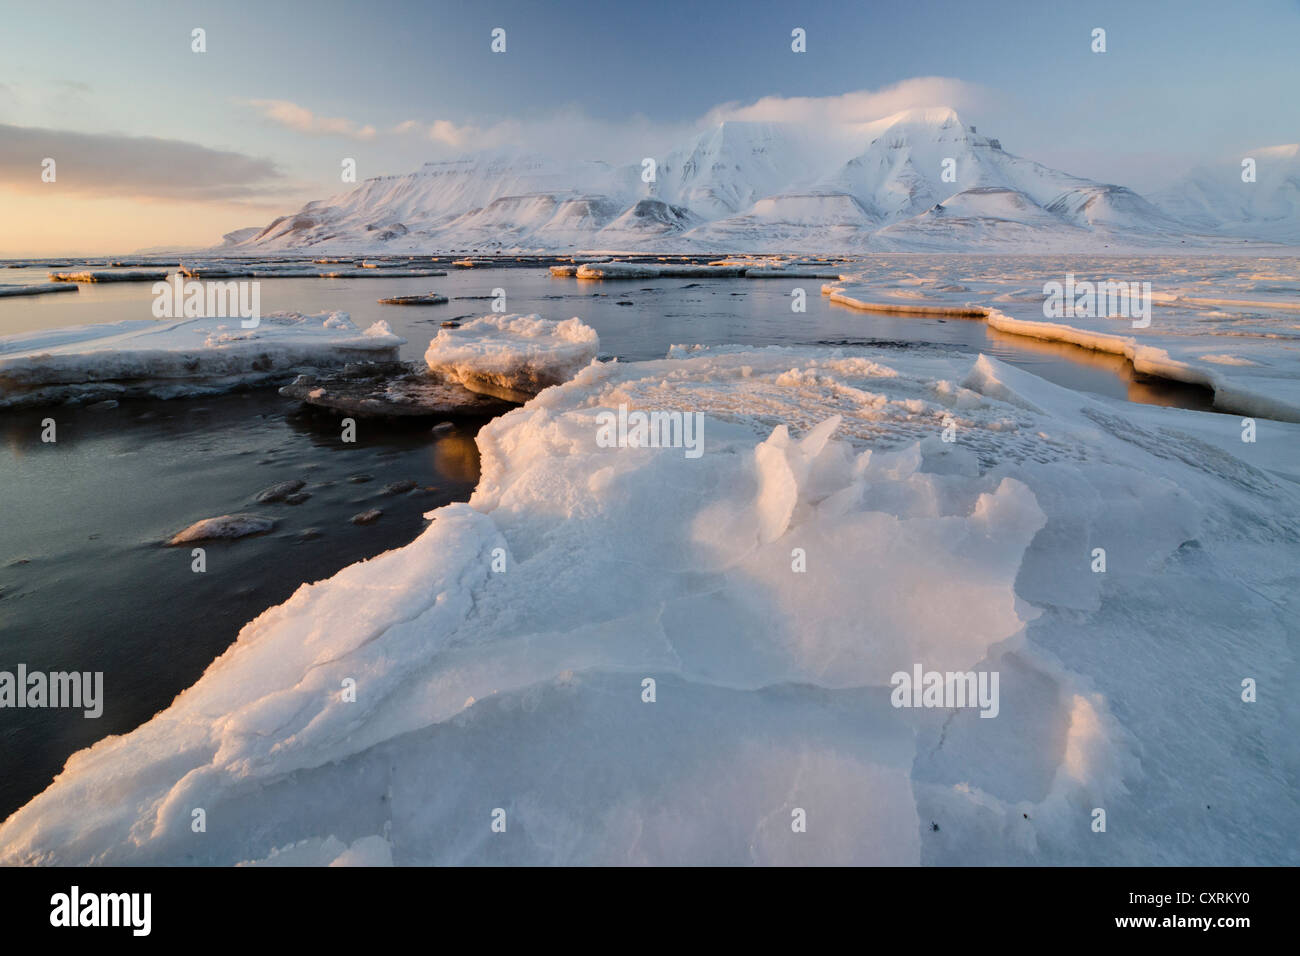 Au bord de la banquise dans Adventfjorden, Advent Bay, Mt Hjorthfjellet au dos, Longyearbyen, Spitsbergen, Svalbard, Norvège Banque D'Images